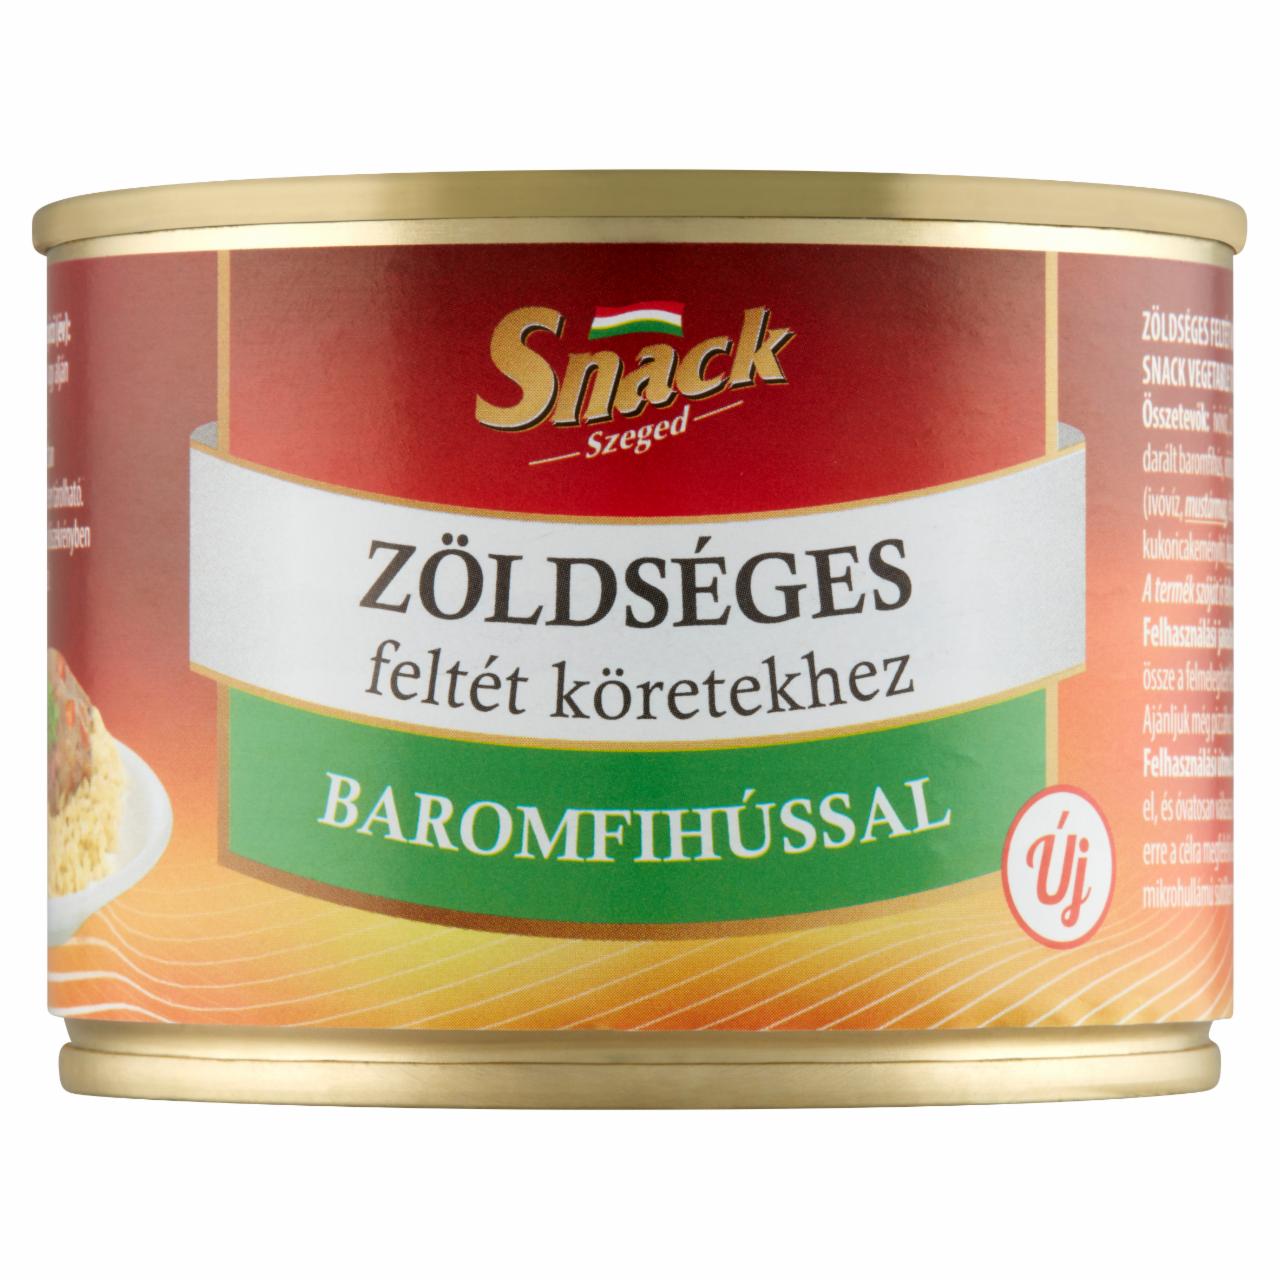 Képek - Snack Szeged zöldséges feltét köretekhez baromfihússal 200 g